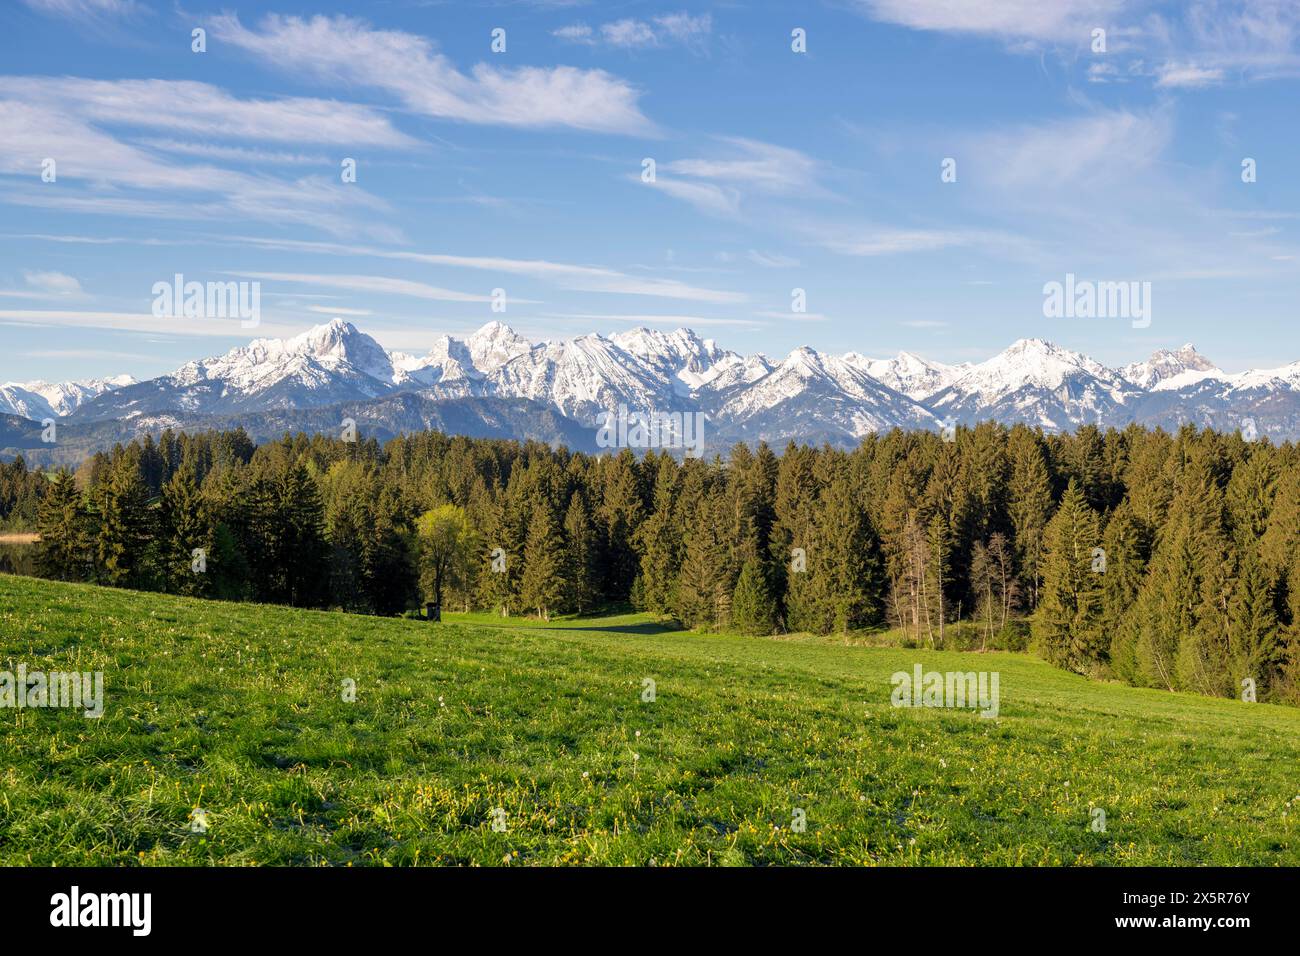 Prato primaverile vicino a Füssen, Alpi Allgäu, neve, foresta di abeti, Allgäu, Baviera, Germania, Europa Foto Stock